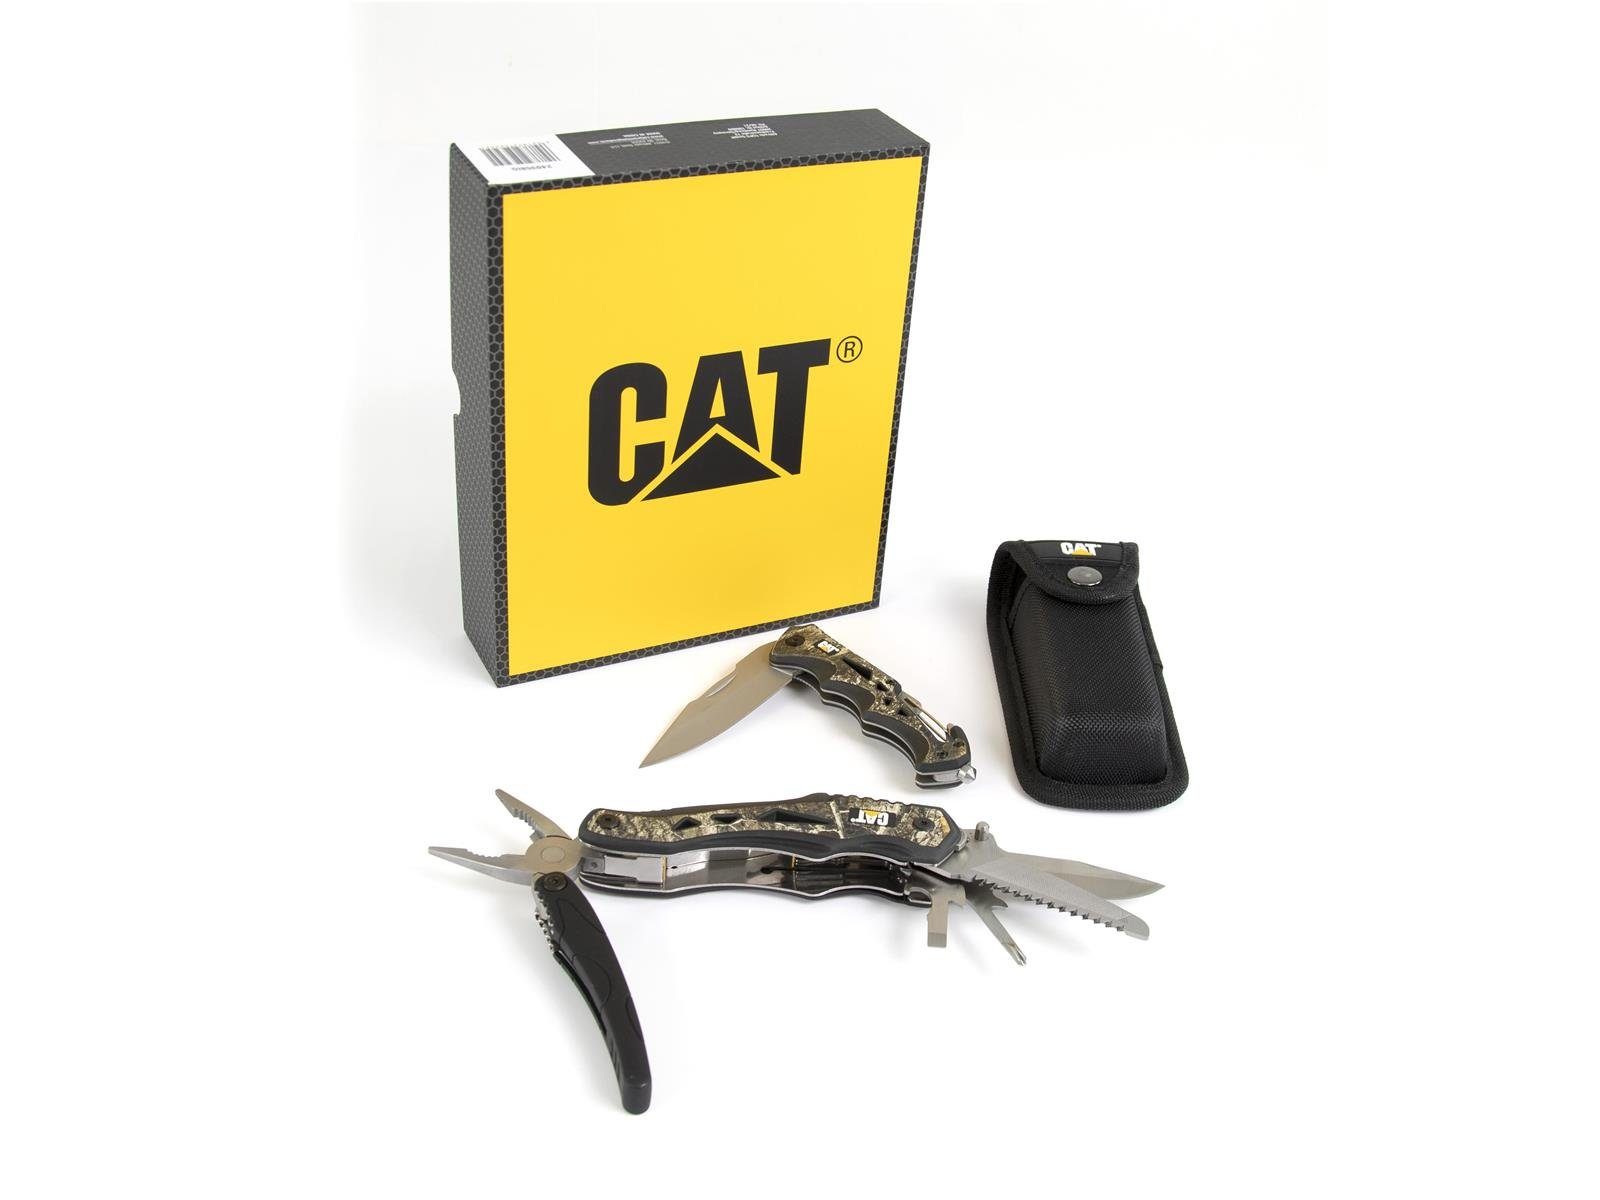 CATERPILLAR Taschenmesser CAT Multitool mit Sicherheitshammer (Set), Multitool, BOX mit in Taschen, 10 Gürteltasche, Klappmesser 1 Glasfasergriff, 2er Set